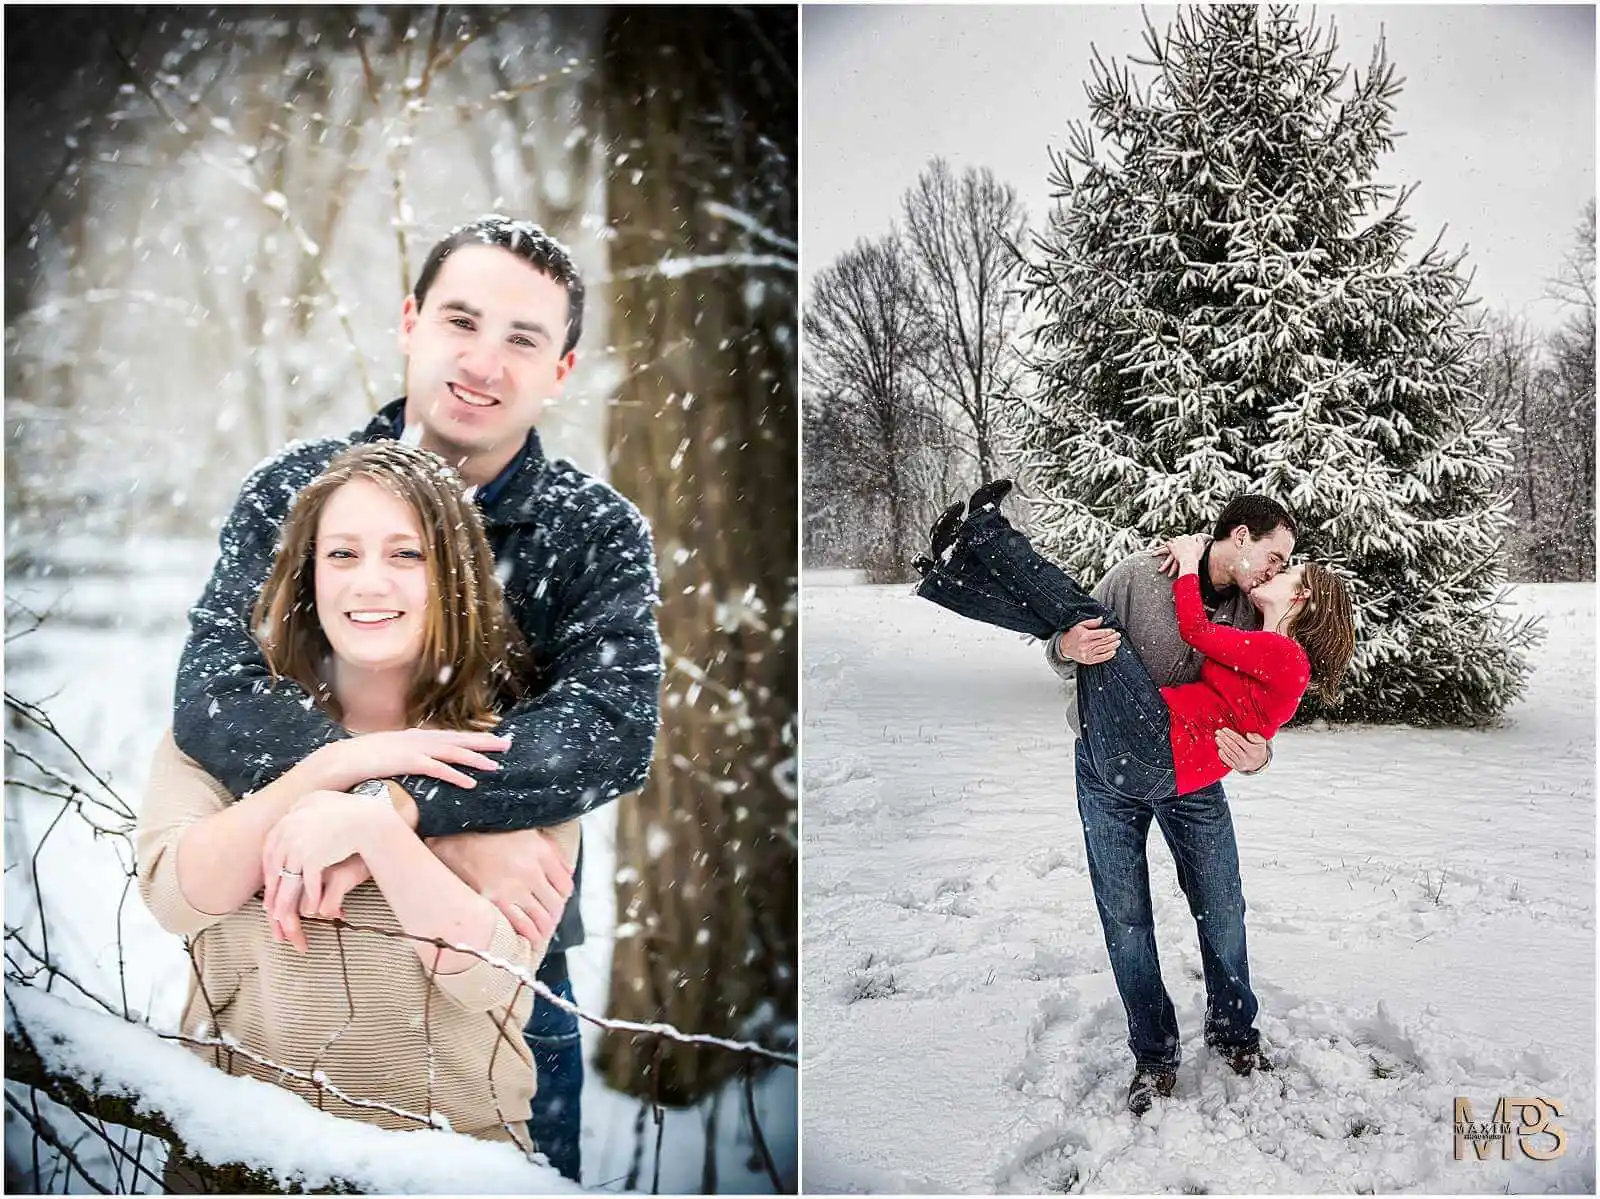 Loveland Ohio snowy wedding engagement